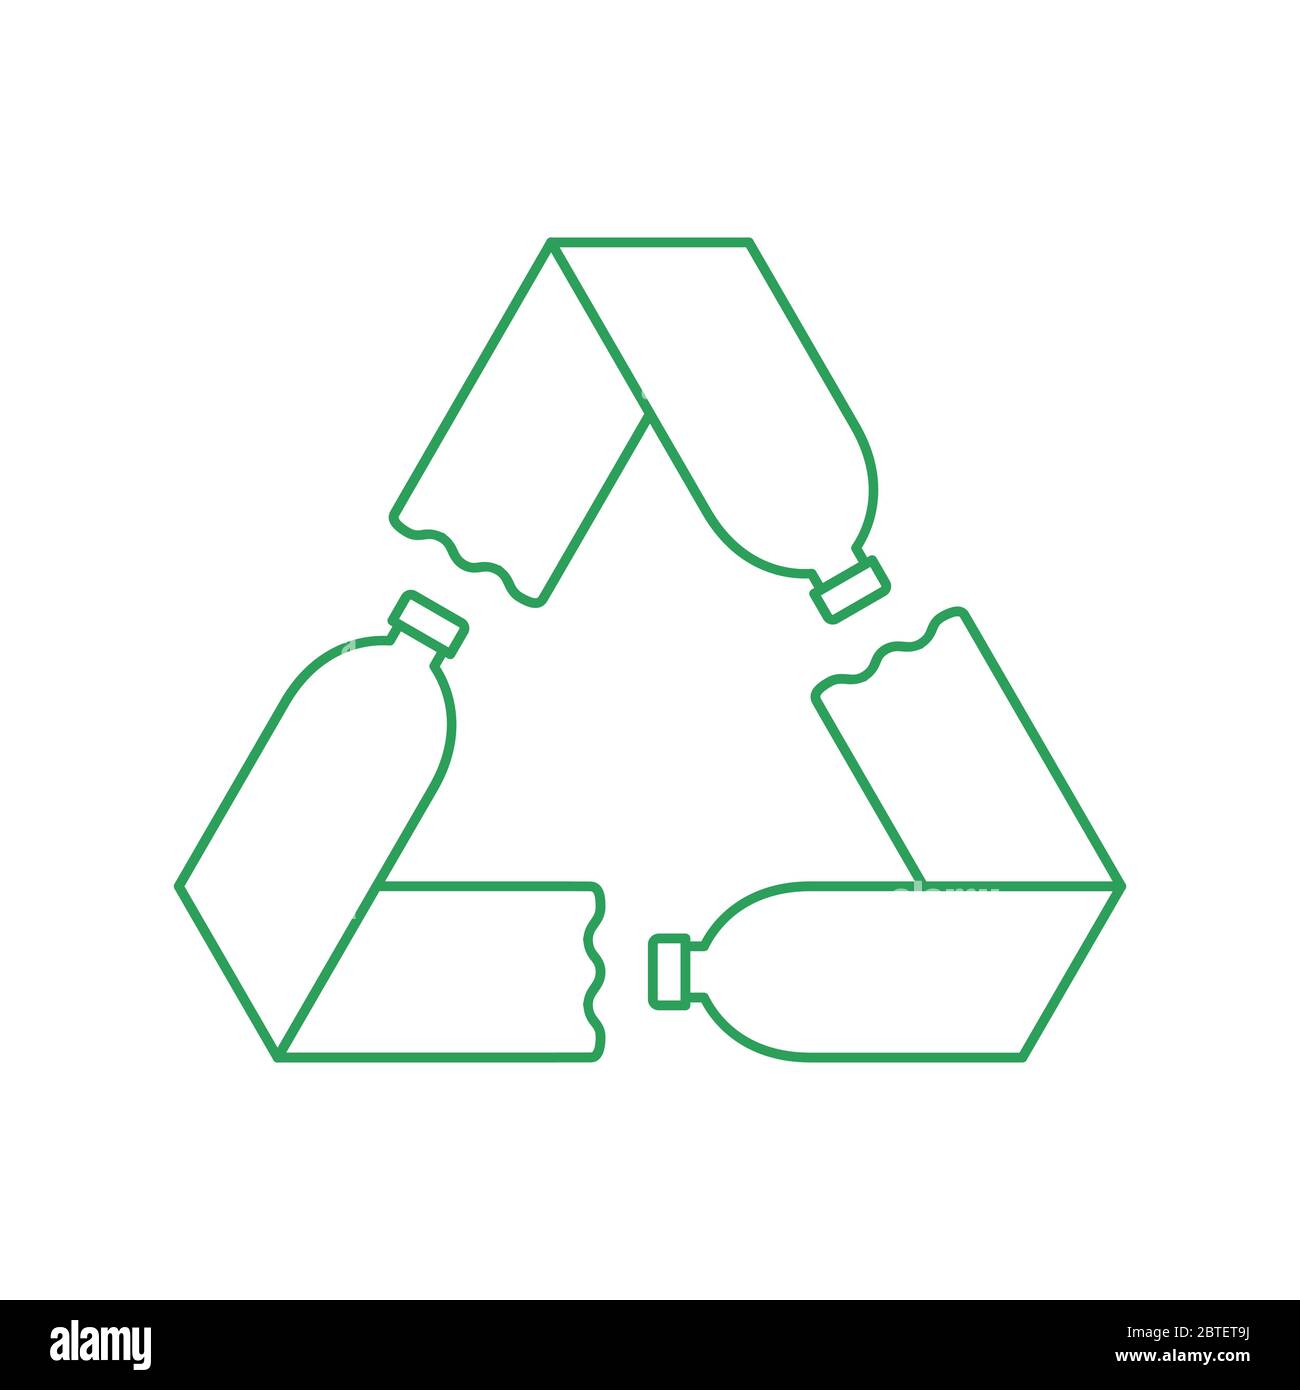 Grünes Recycling-Symbol mit drei Plastikflaschen. Kunststoff-Recycling-Konzept. Mobius-Schleife mit Pfeilen. Umweltfreundliches, wiederverwendbares Haustier. Vektor Stock Vektor